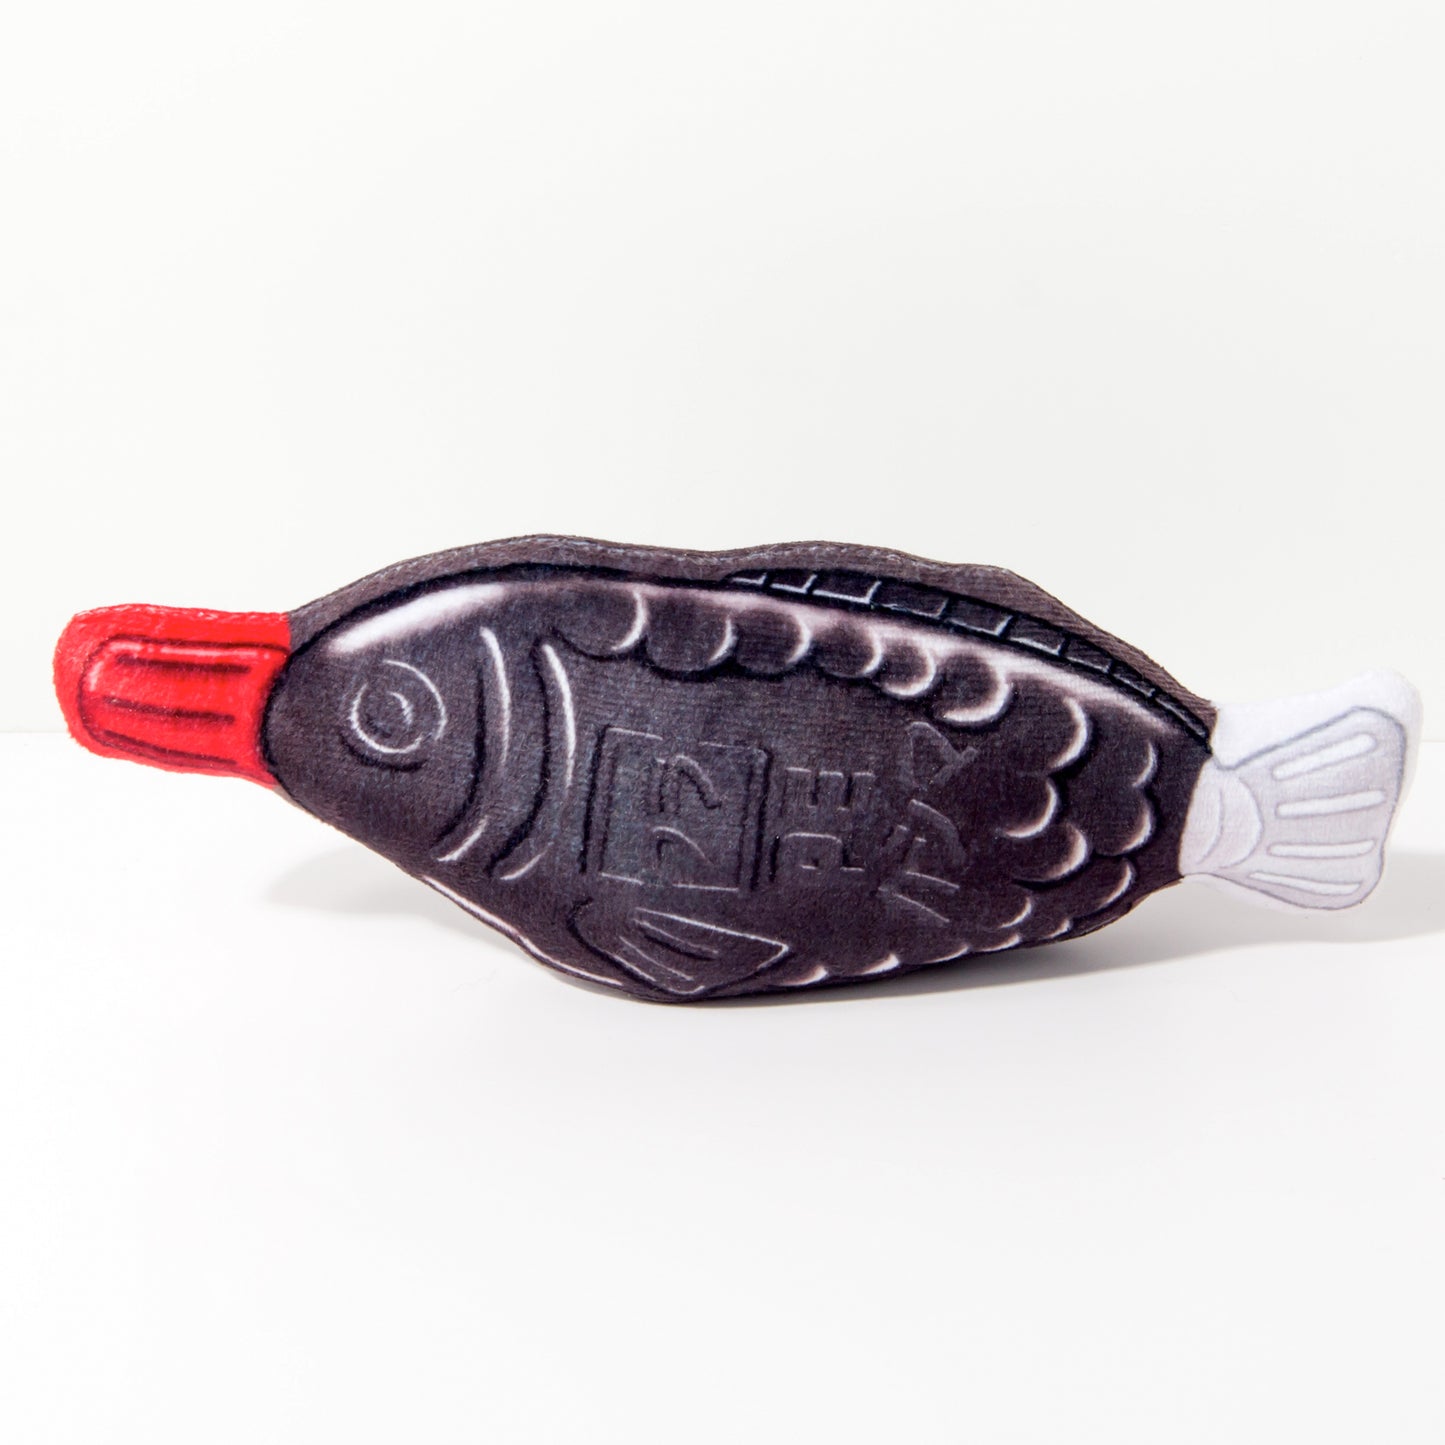 Kashima Soy Sauce Fish Shaped Pet Toy